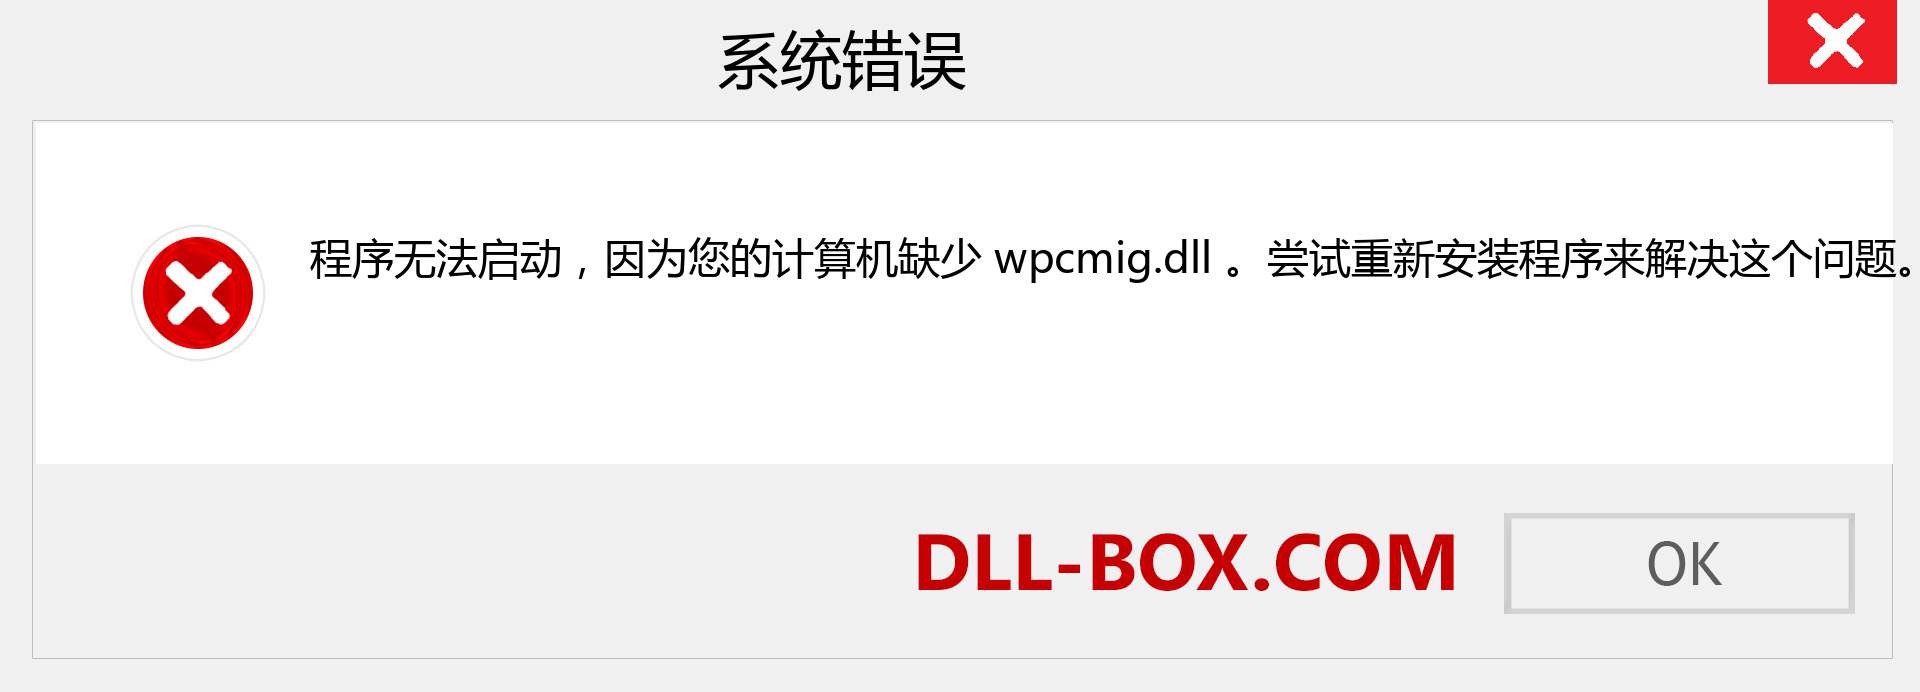 wpcmig.dll 文件丢失？。 适用于 Windows 7、8、10 的下载 - 修复 Windows、照片、图像上的 wpcmig dll 丢失错误